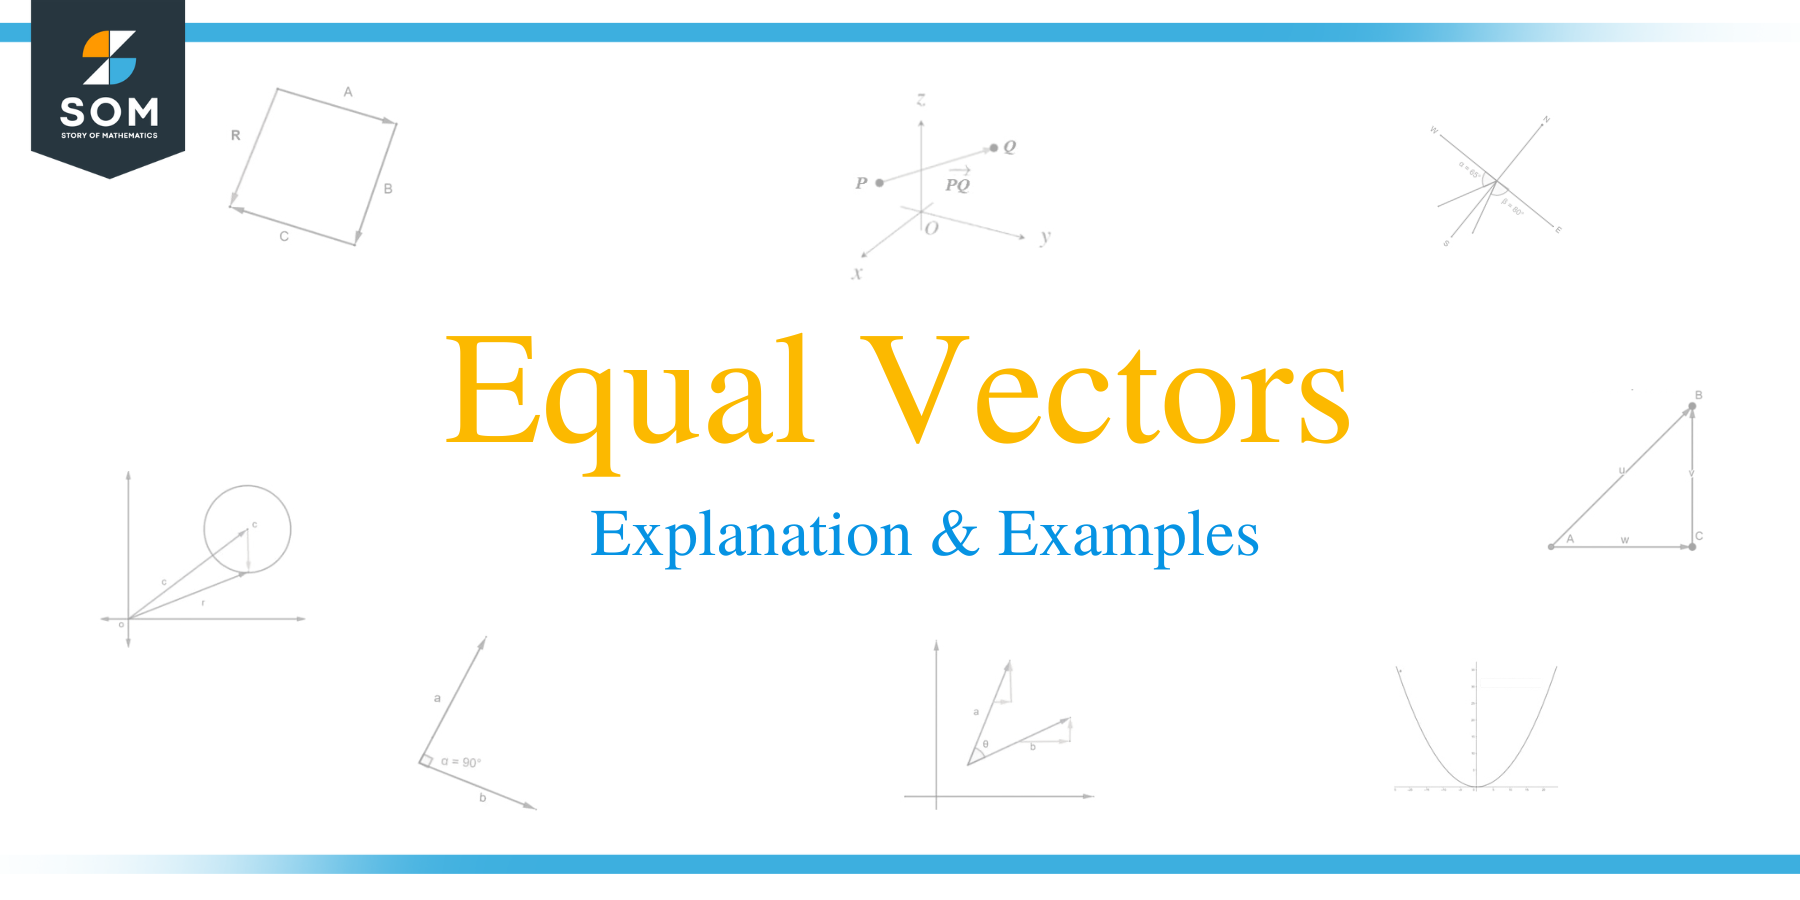 Equal Vectors